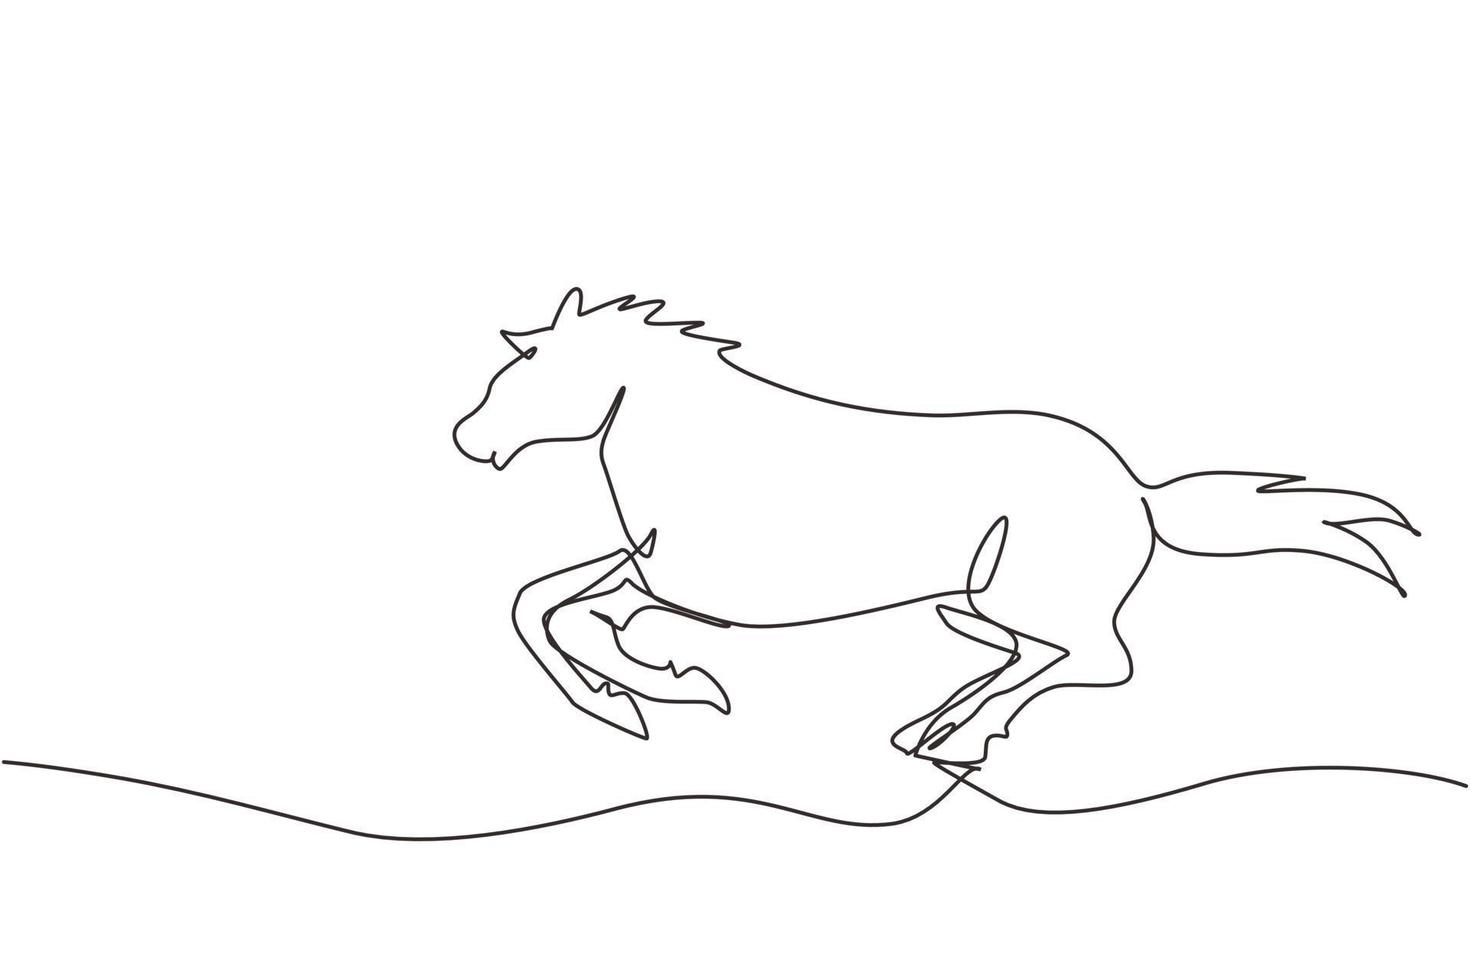 cavallo in corsa di disegno a linea singola con lunga criniera. stallone abbassa la testa e galoppa con le gambe distese. silhouette nera vettoriale per articoli equestri. grafica di disegno a linea continua